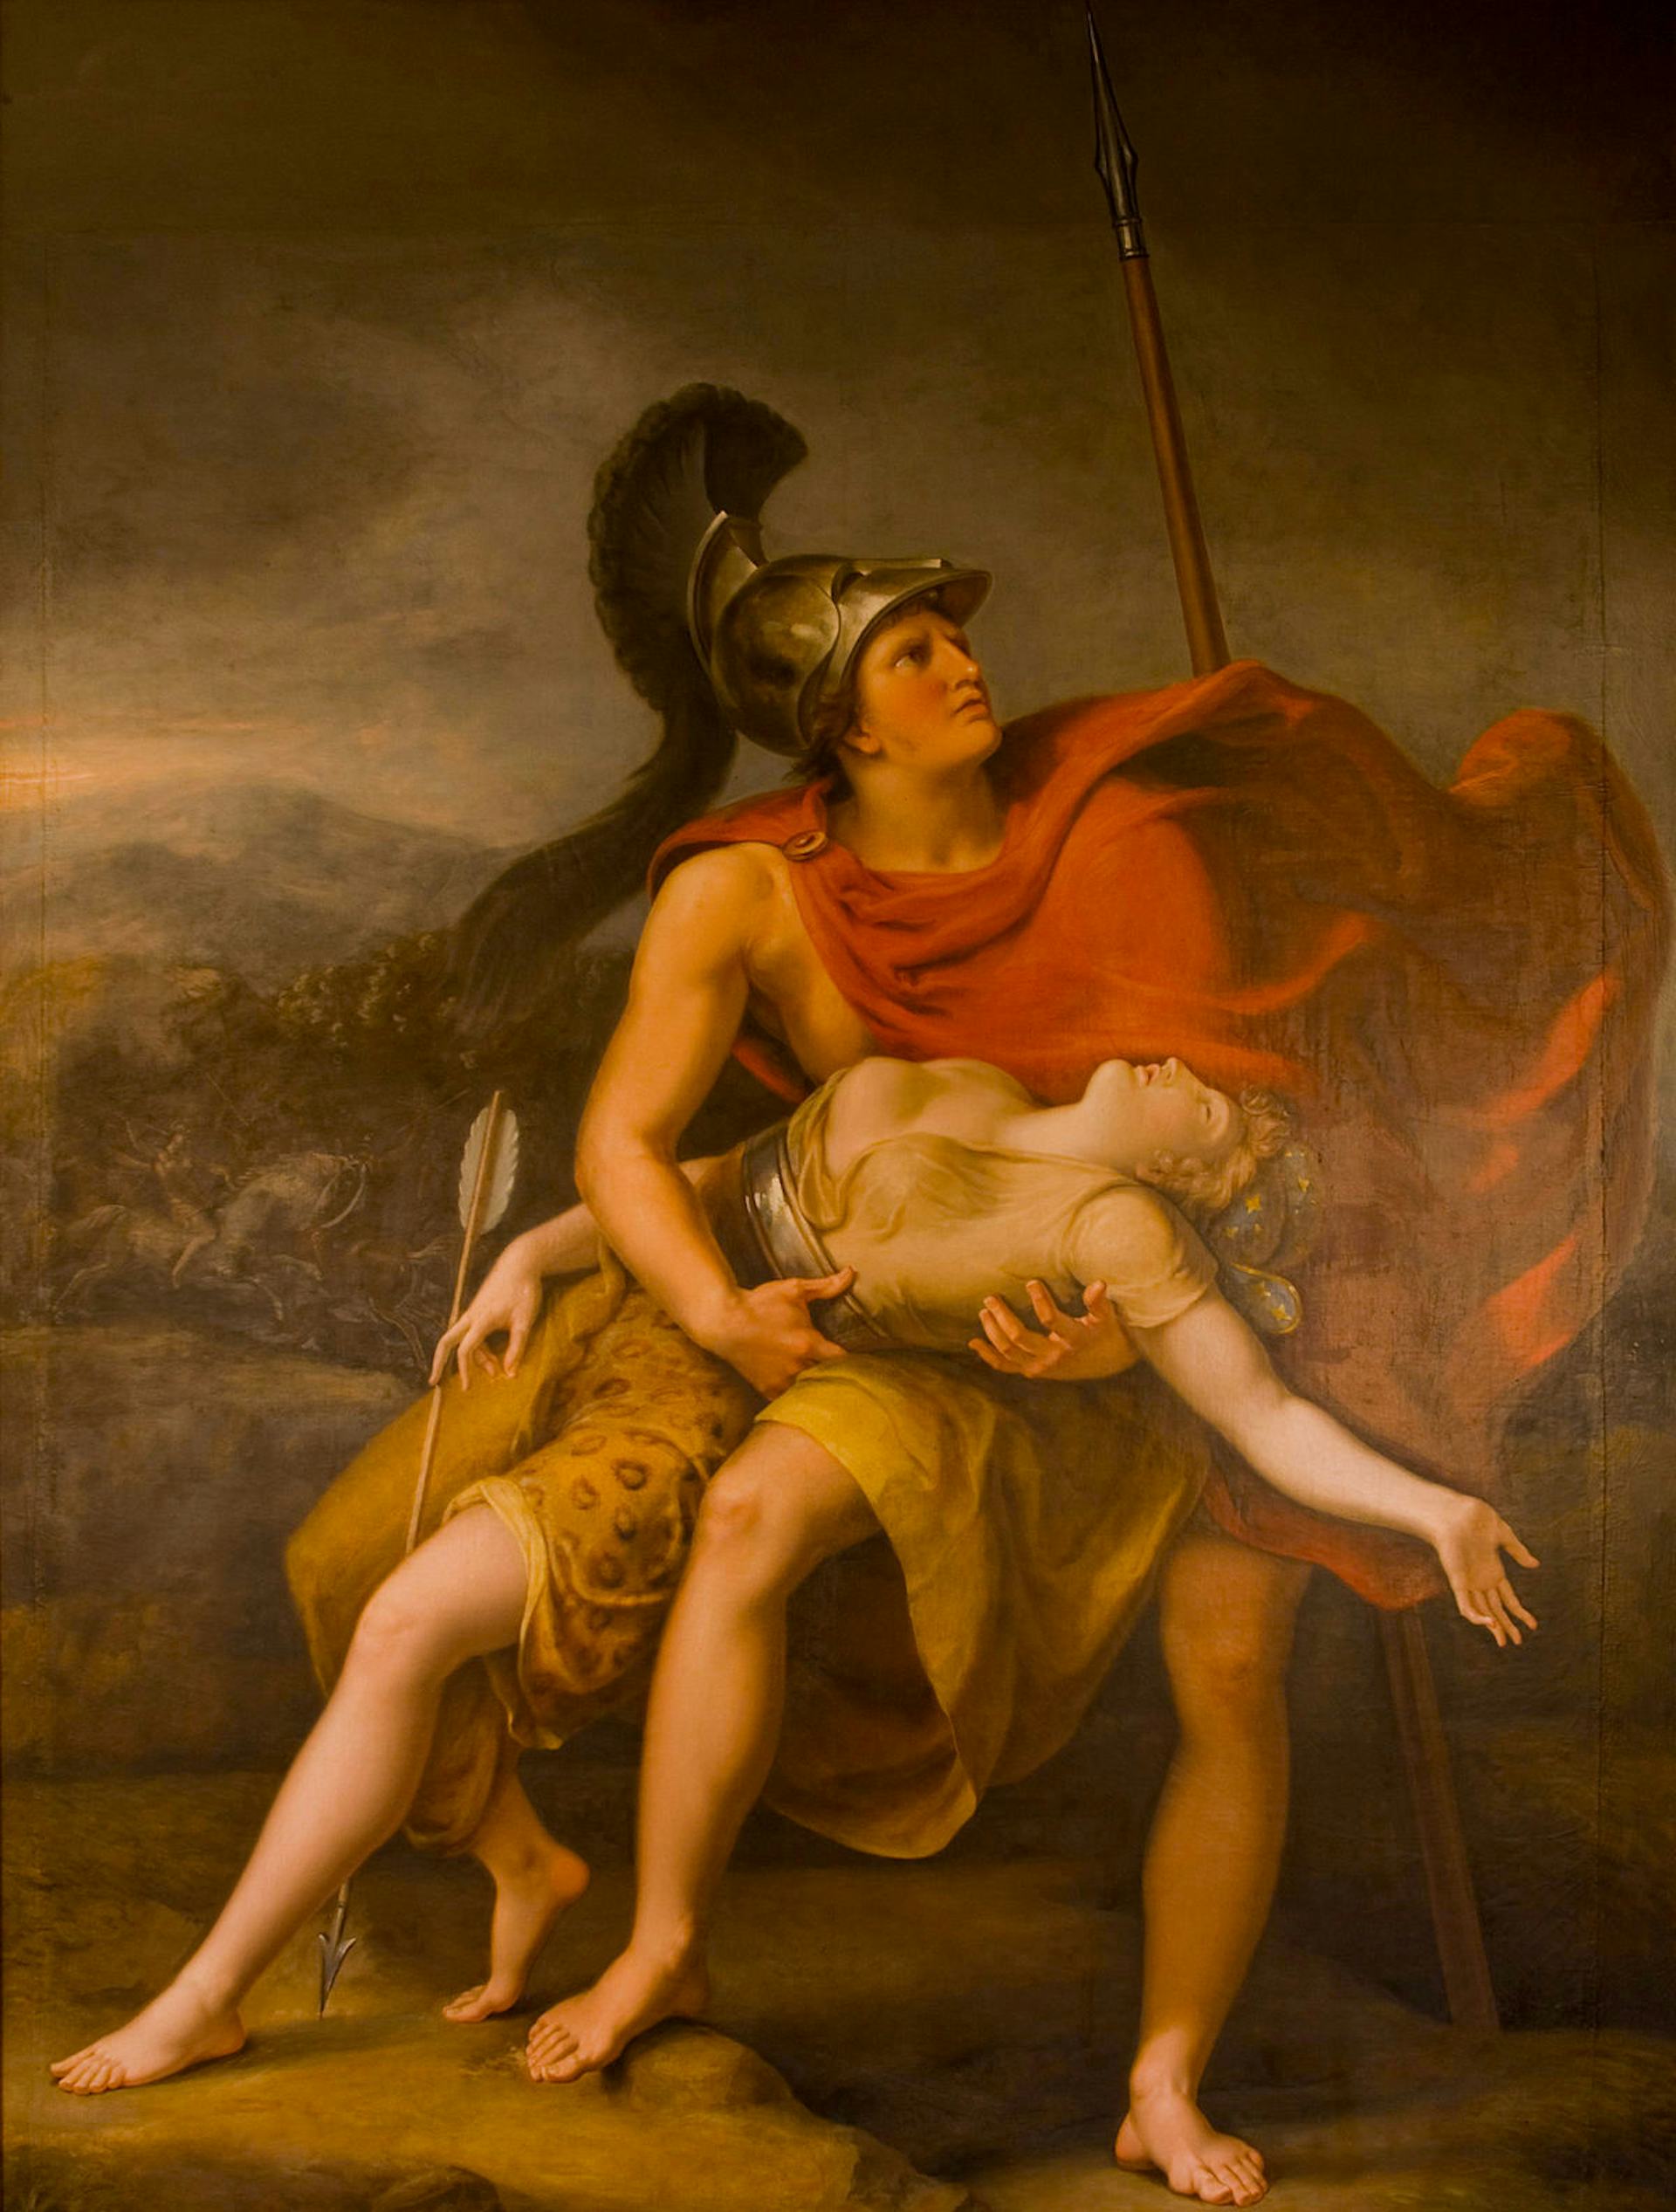 Achilles and Penthesilea by Johann Heinrich Wilhelm Tischbein (ca. 1823)